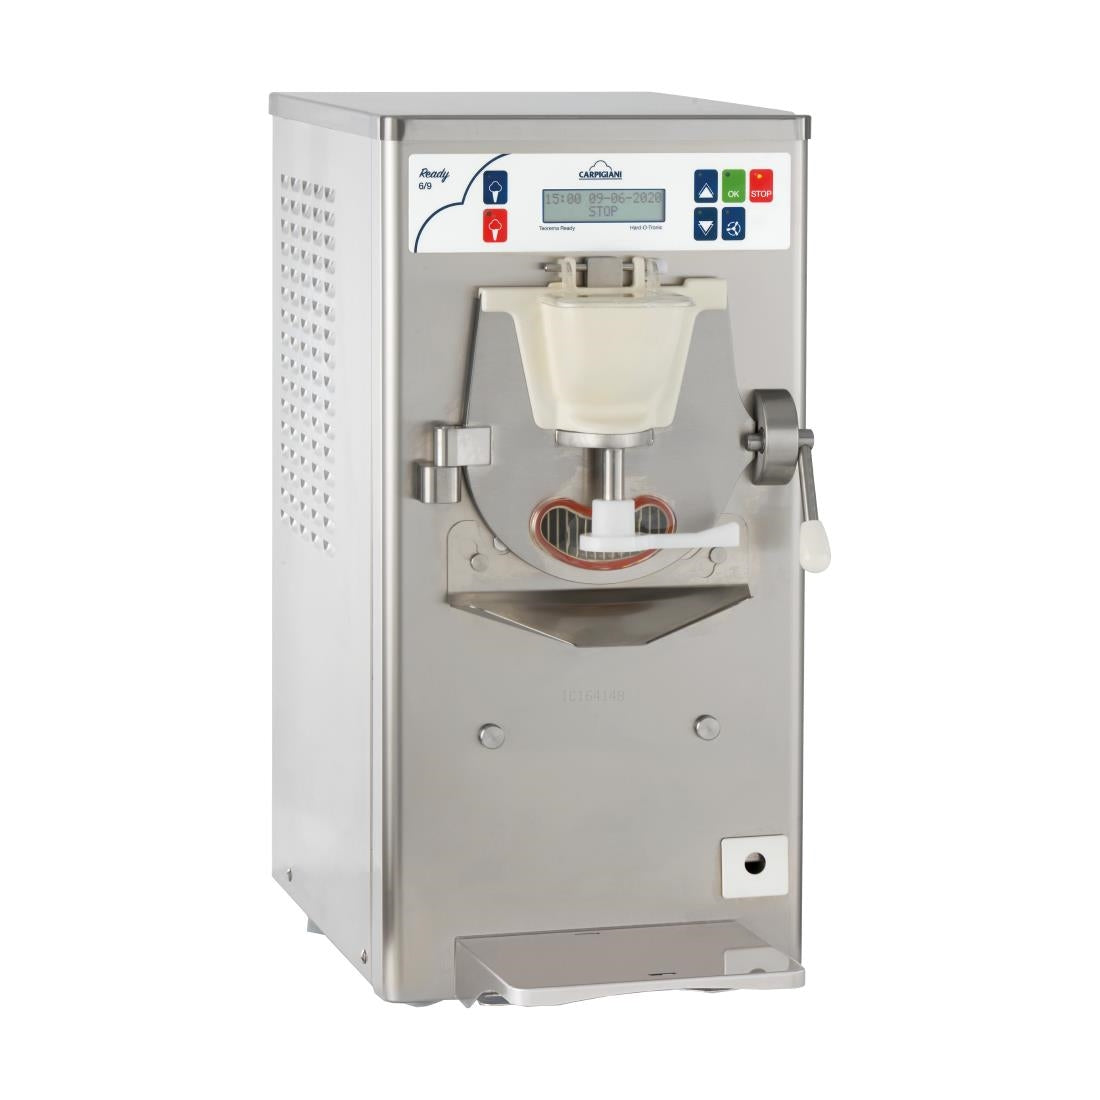 CX495 Carpigiani Self-Pasteurising Gelato Combi Ice Cream Machine Ready 6 9 JD Catering Equipment Solutions Ltd